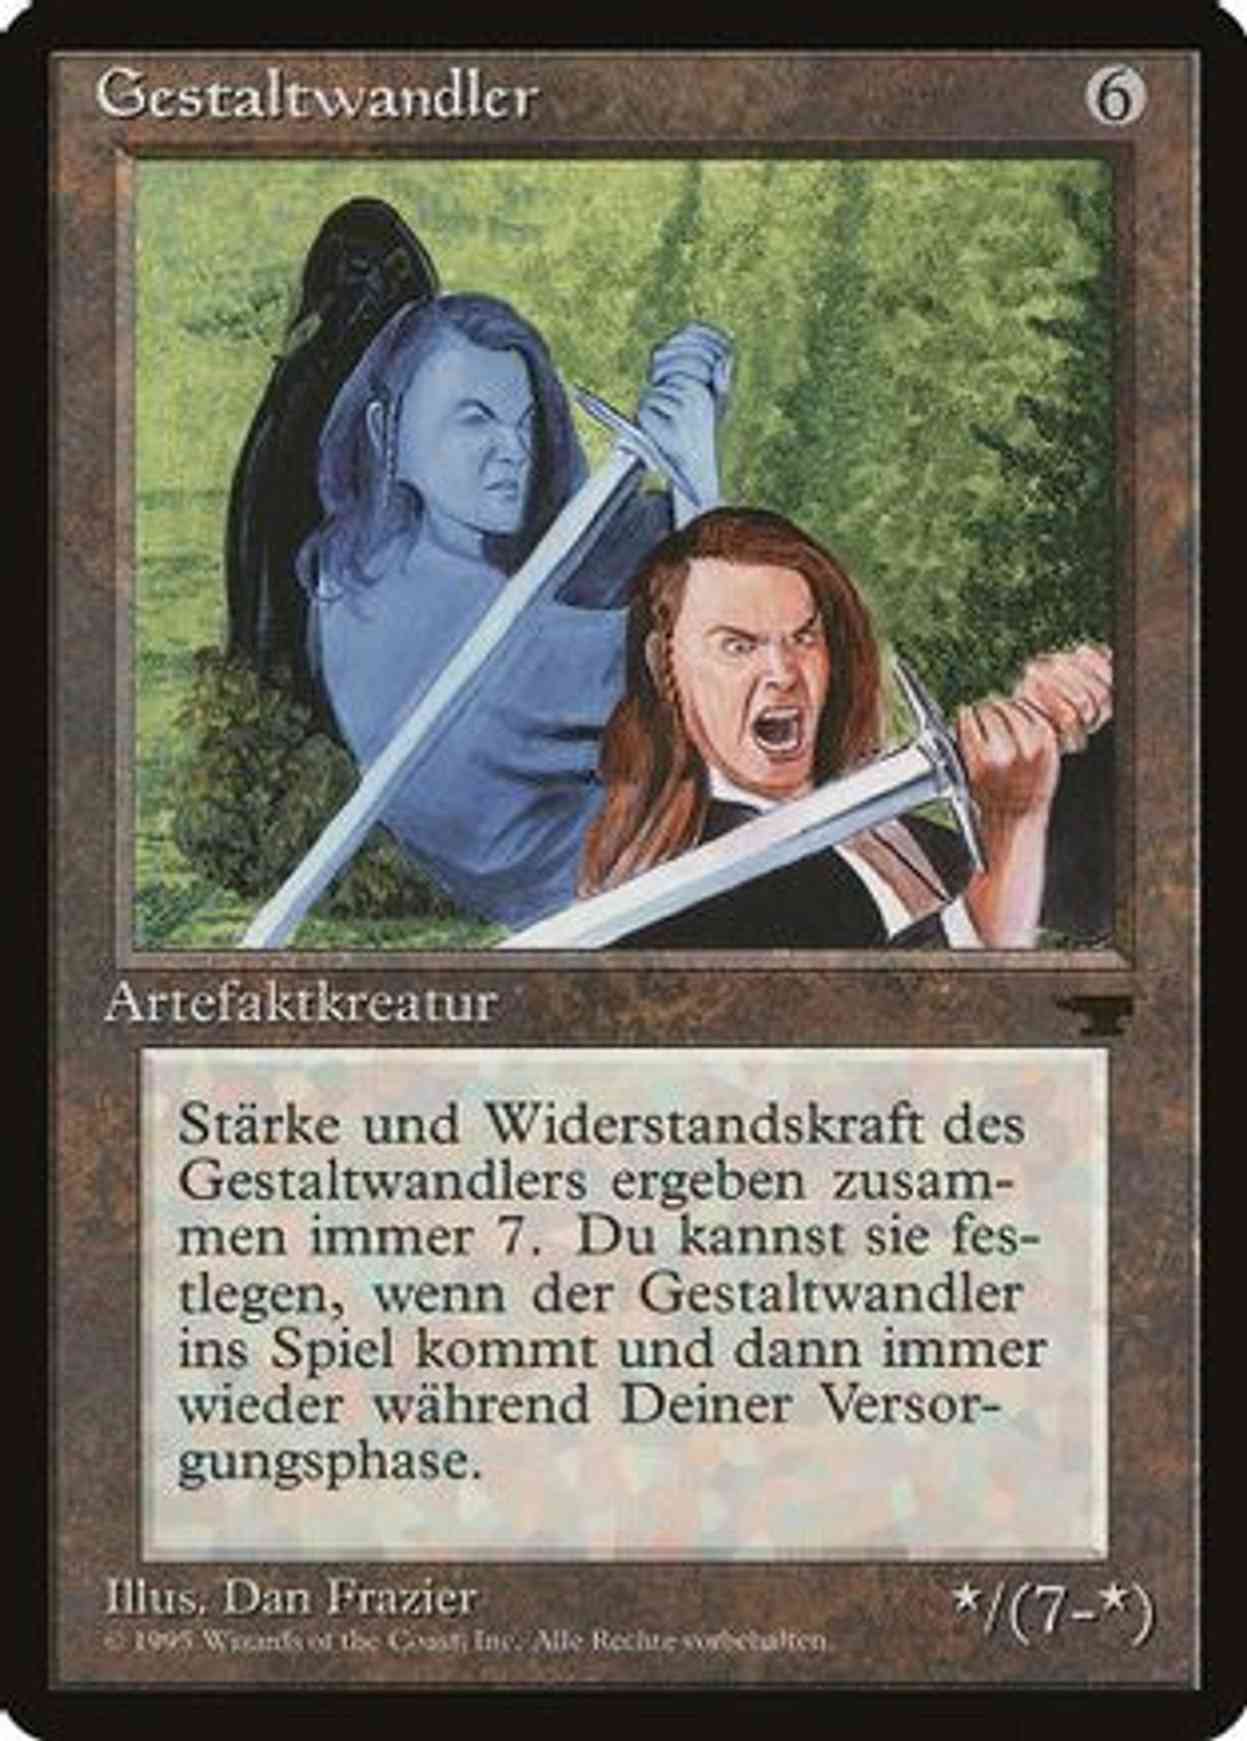 Shapeshifter (German) - "Gestaltwandler" magic card front